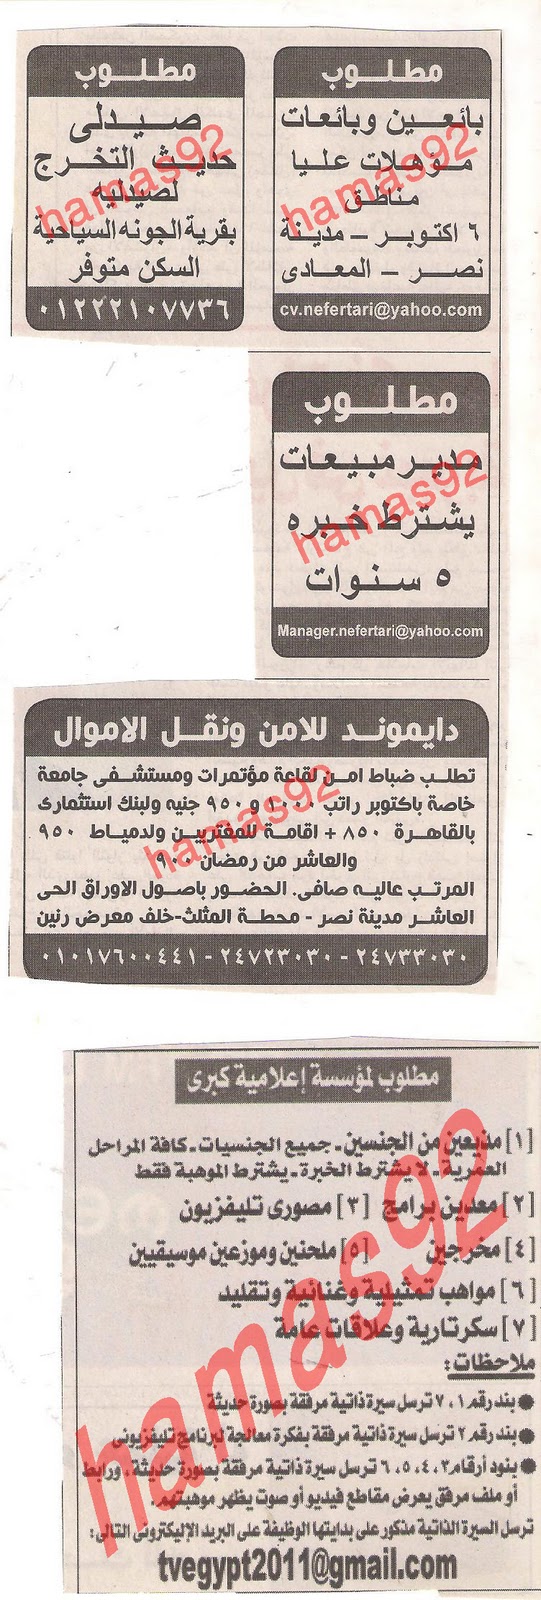 للعمل فى شركة كومباس مصر مطلوب بائعين وبائعات , صيدلى Picture+025